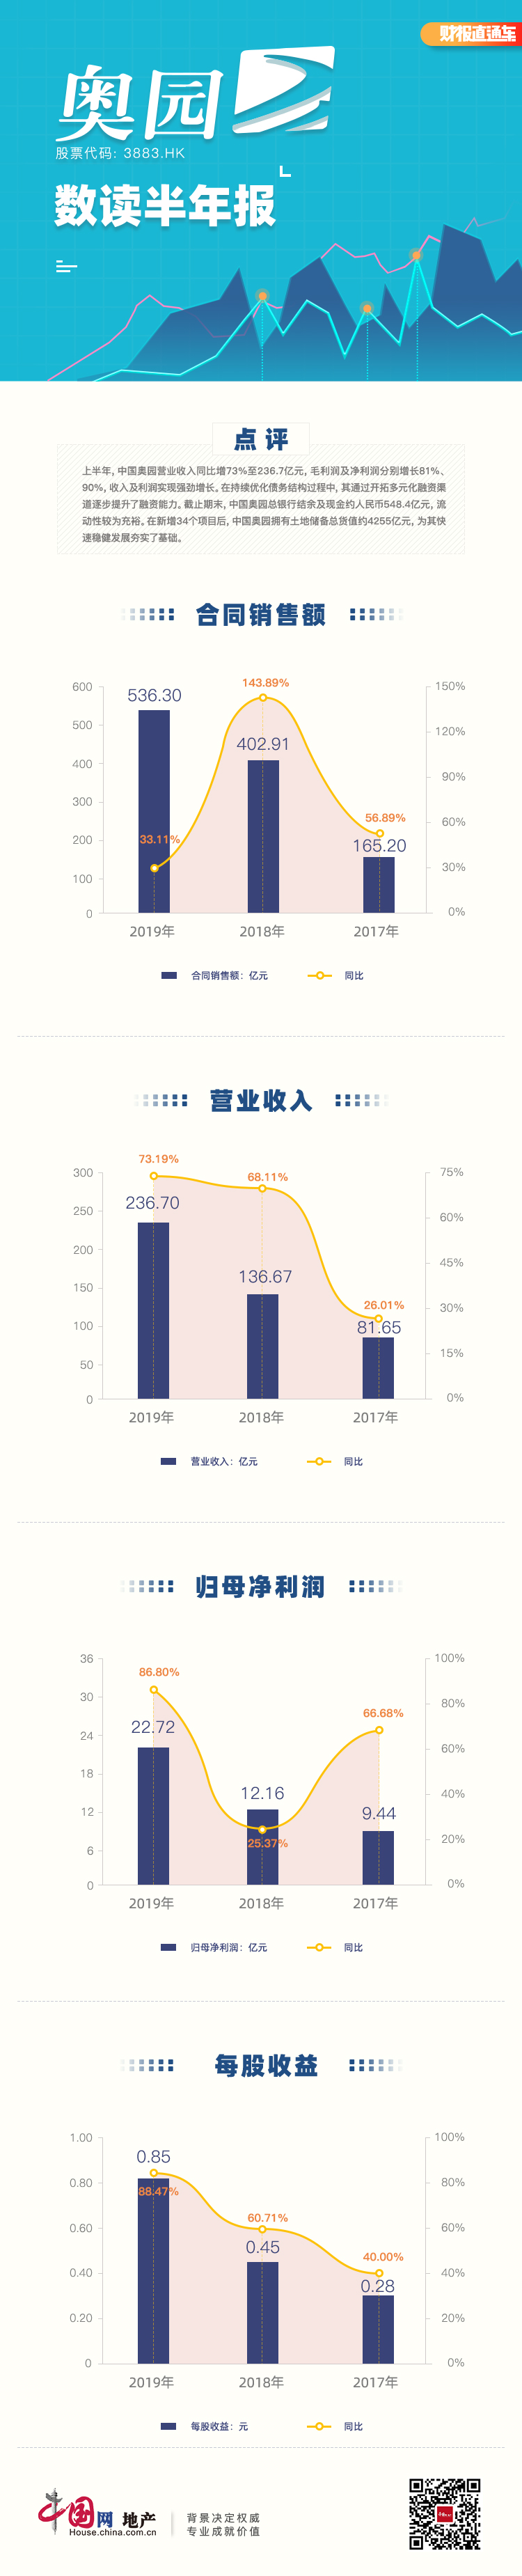 数读半年报|中国奥园：收入及利润实现强劲增长 土储总货值约4255亿元-中国网地产